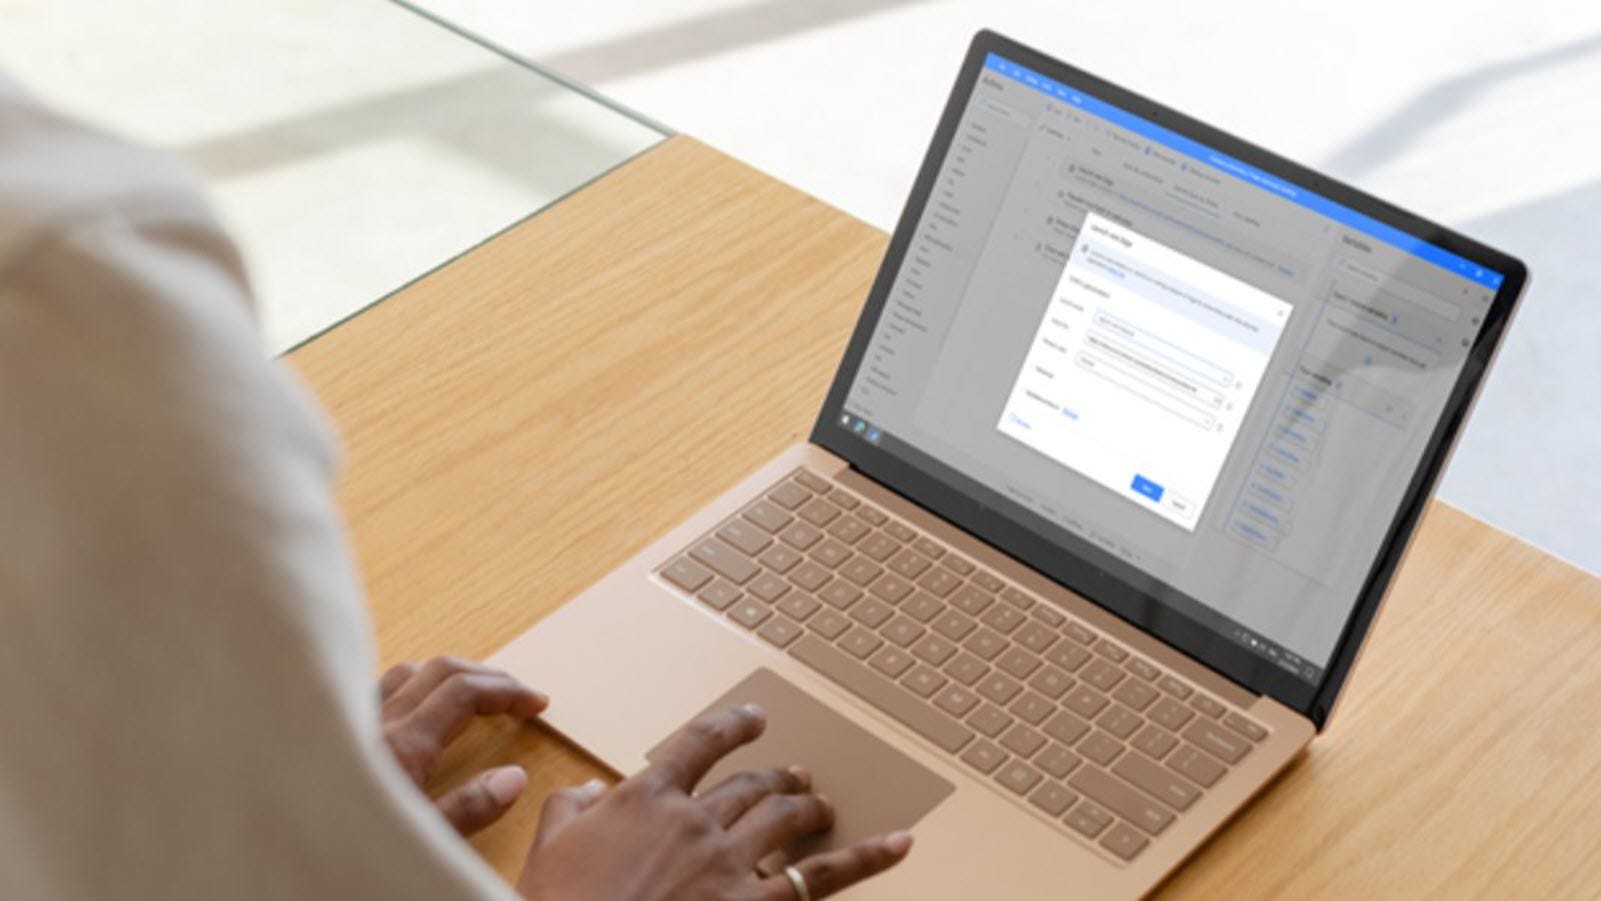 “Desktop Otomatisasi Daya” Microsoft sekarang gratis dan dapat melakukan pekerjaan Anda untuk Anda